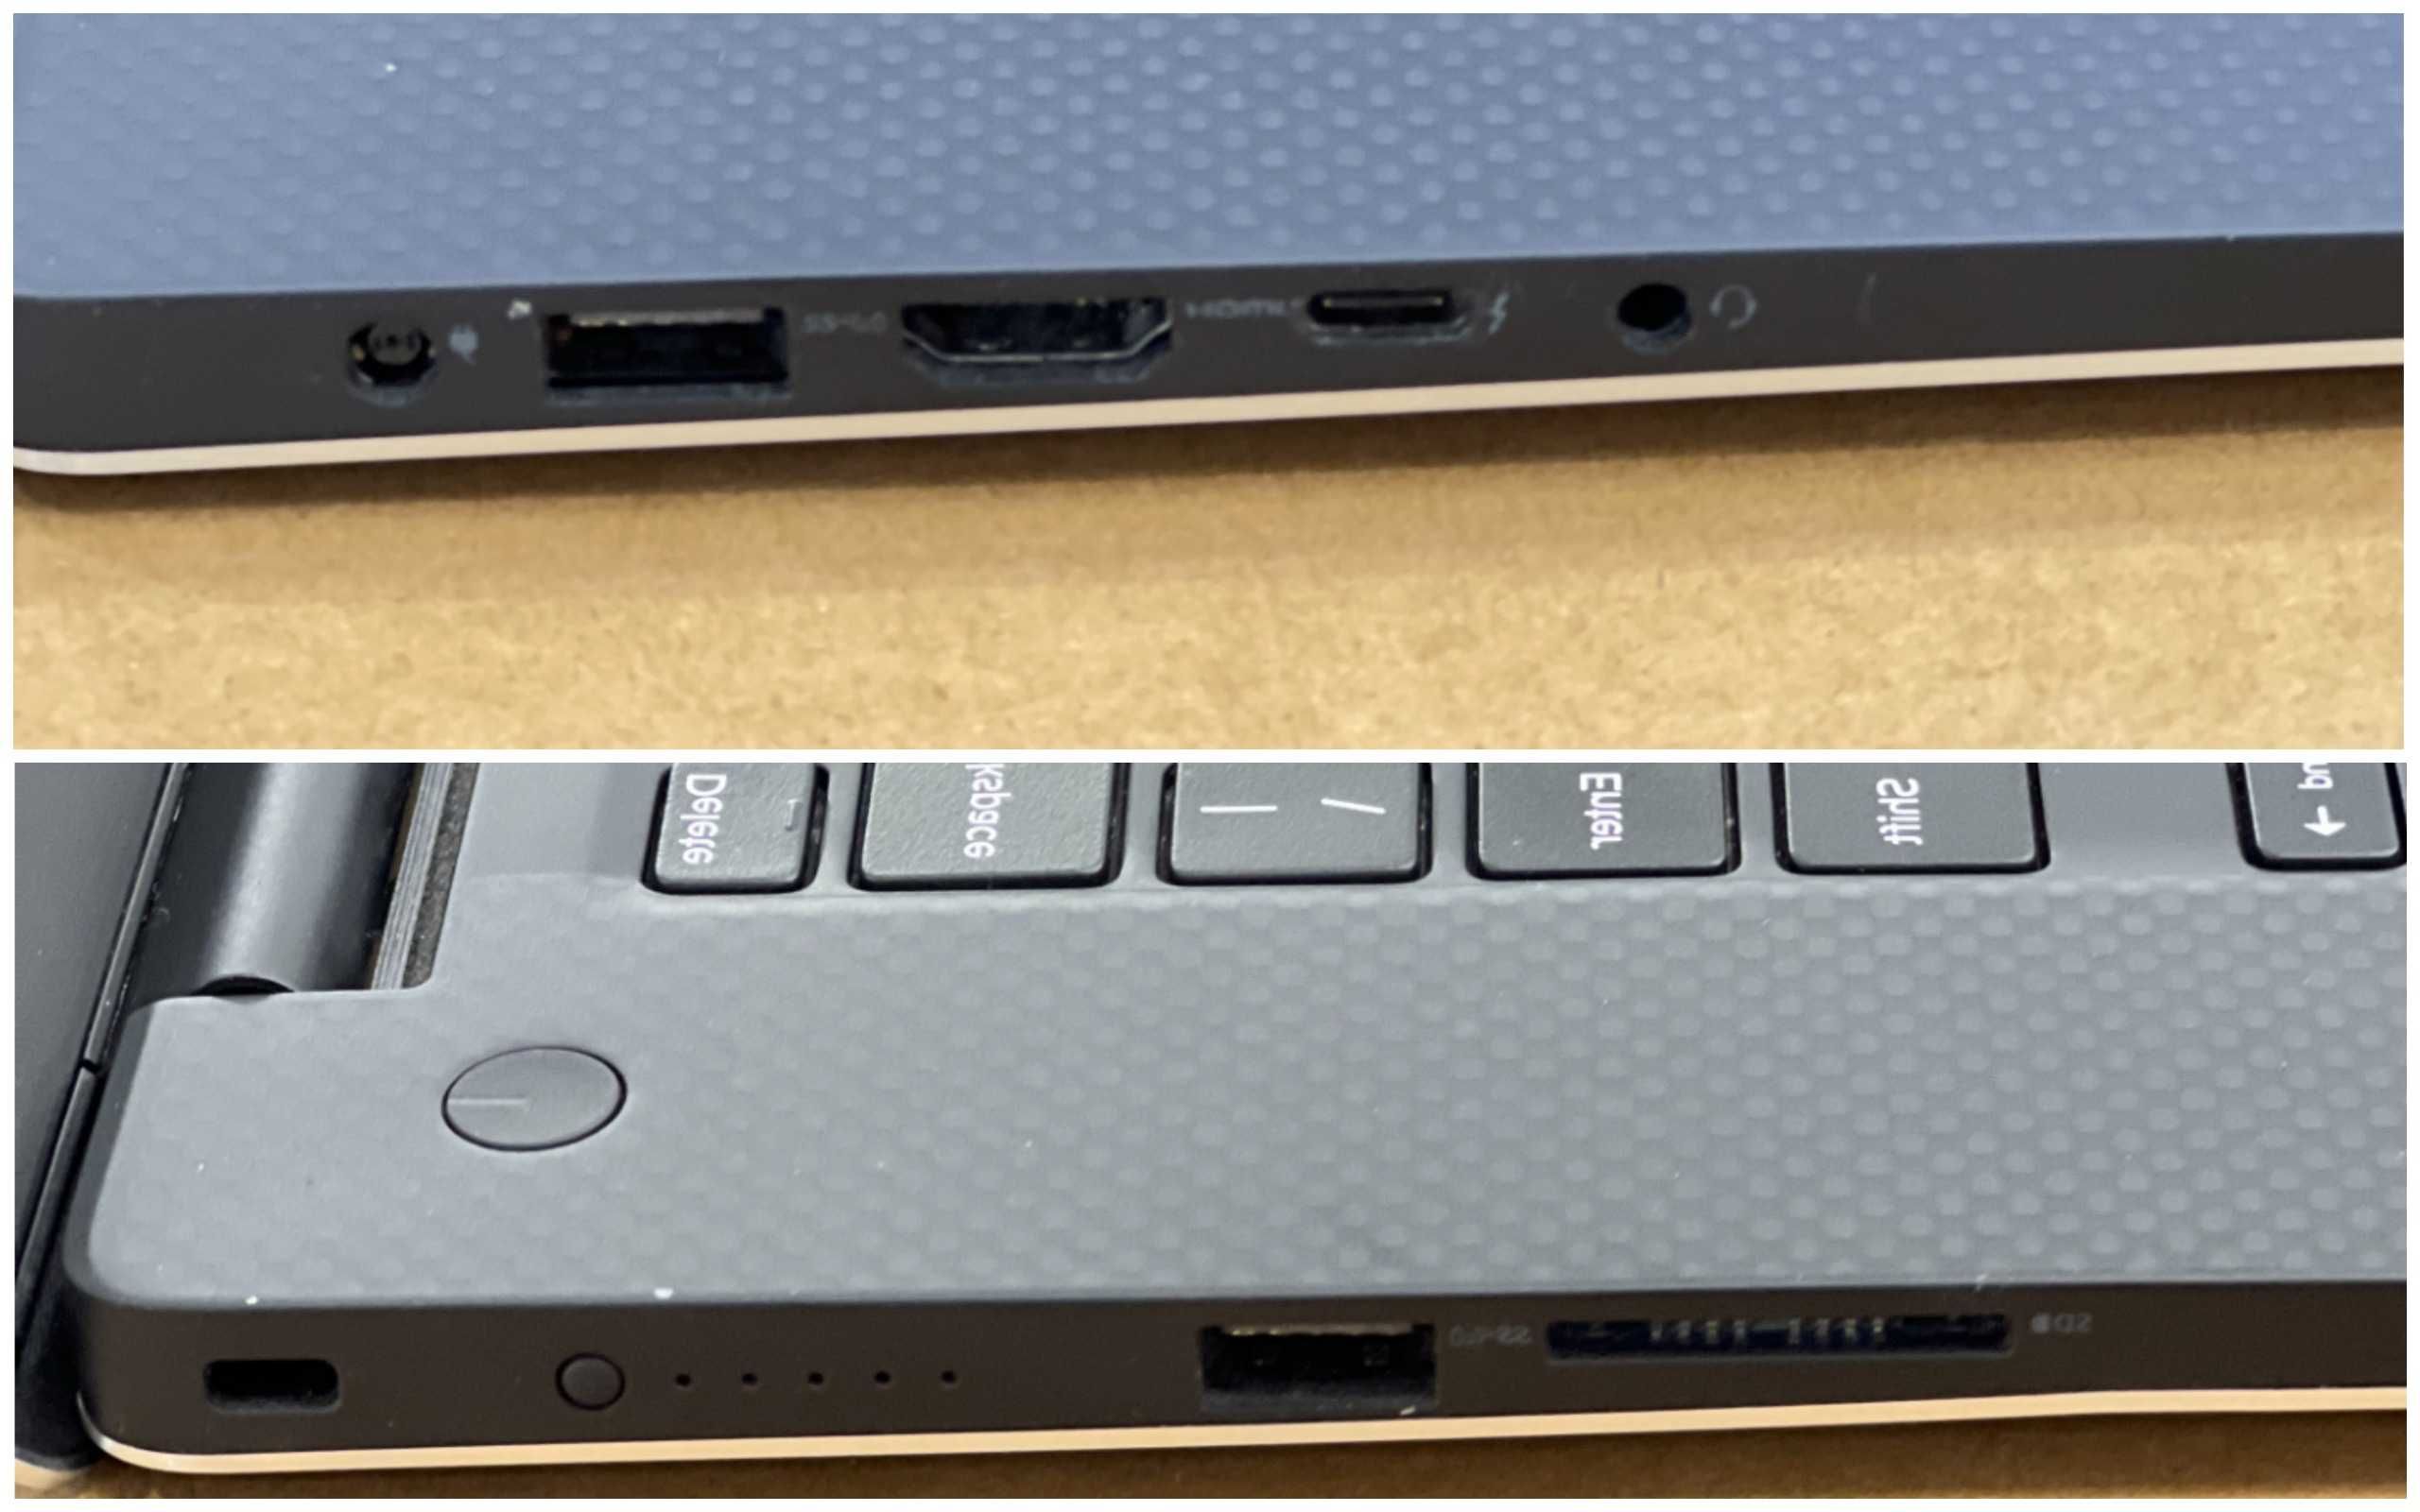 Ноутбук DELL 5520-15.6" Sharp IGZO|i7-7820HQ|512 GB|16 GB|Quadro M1200